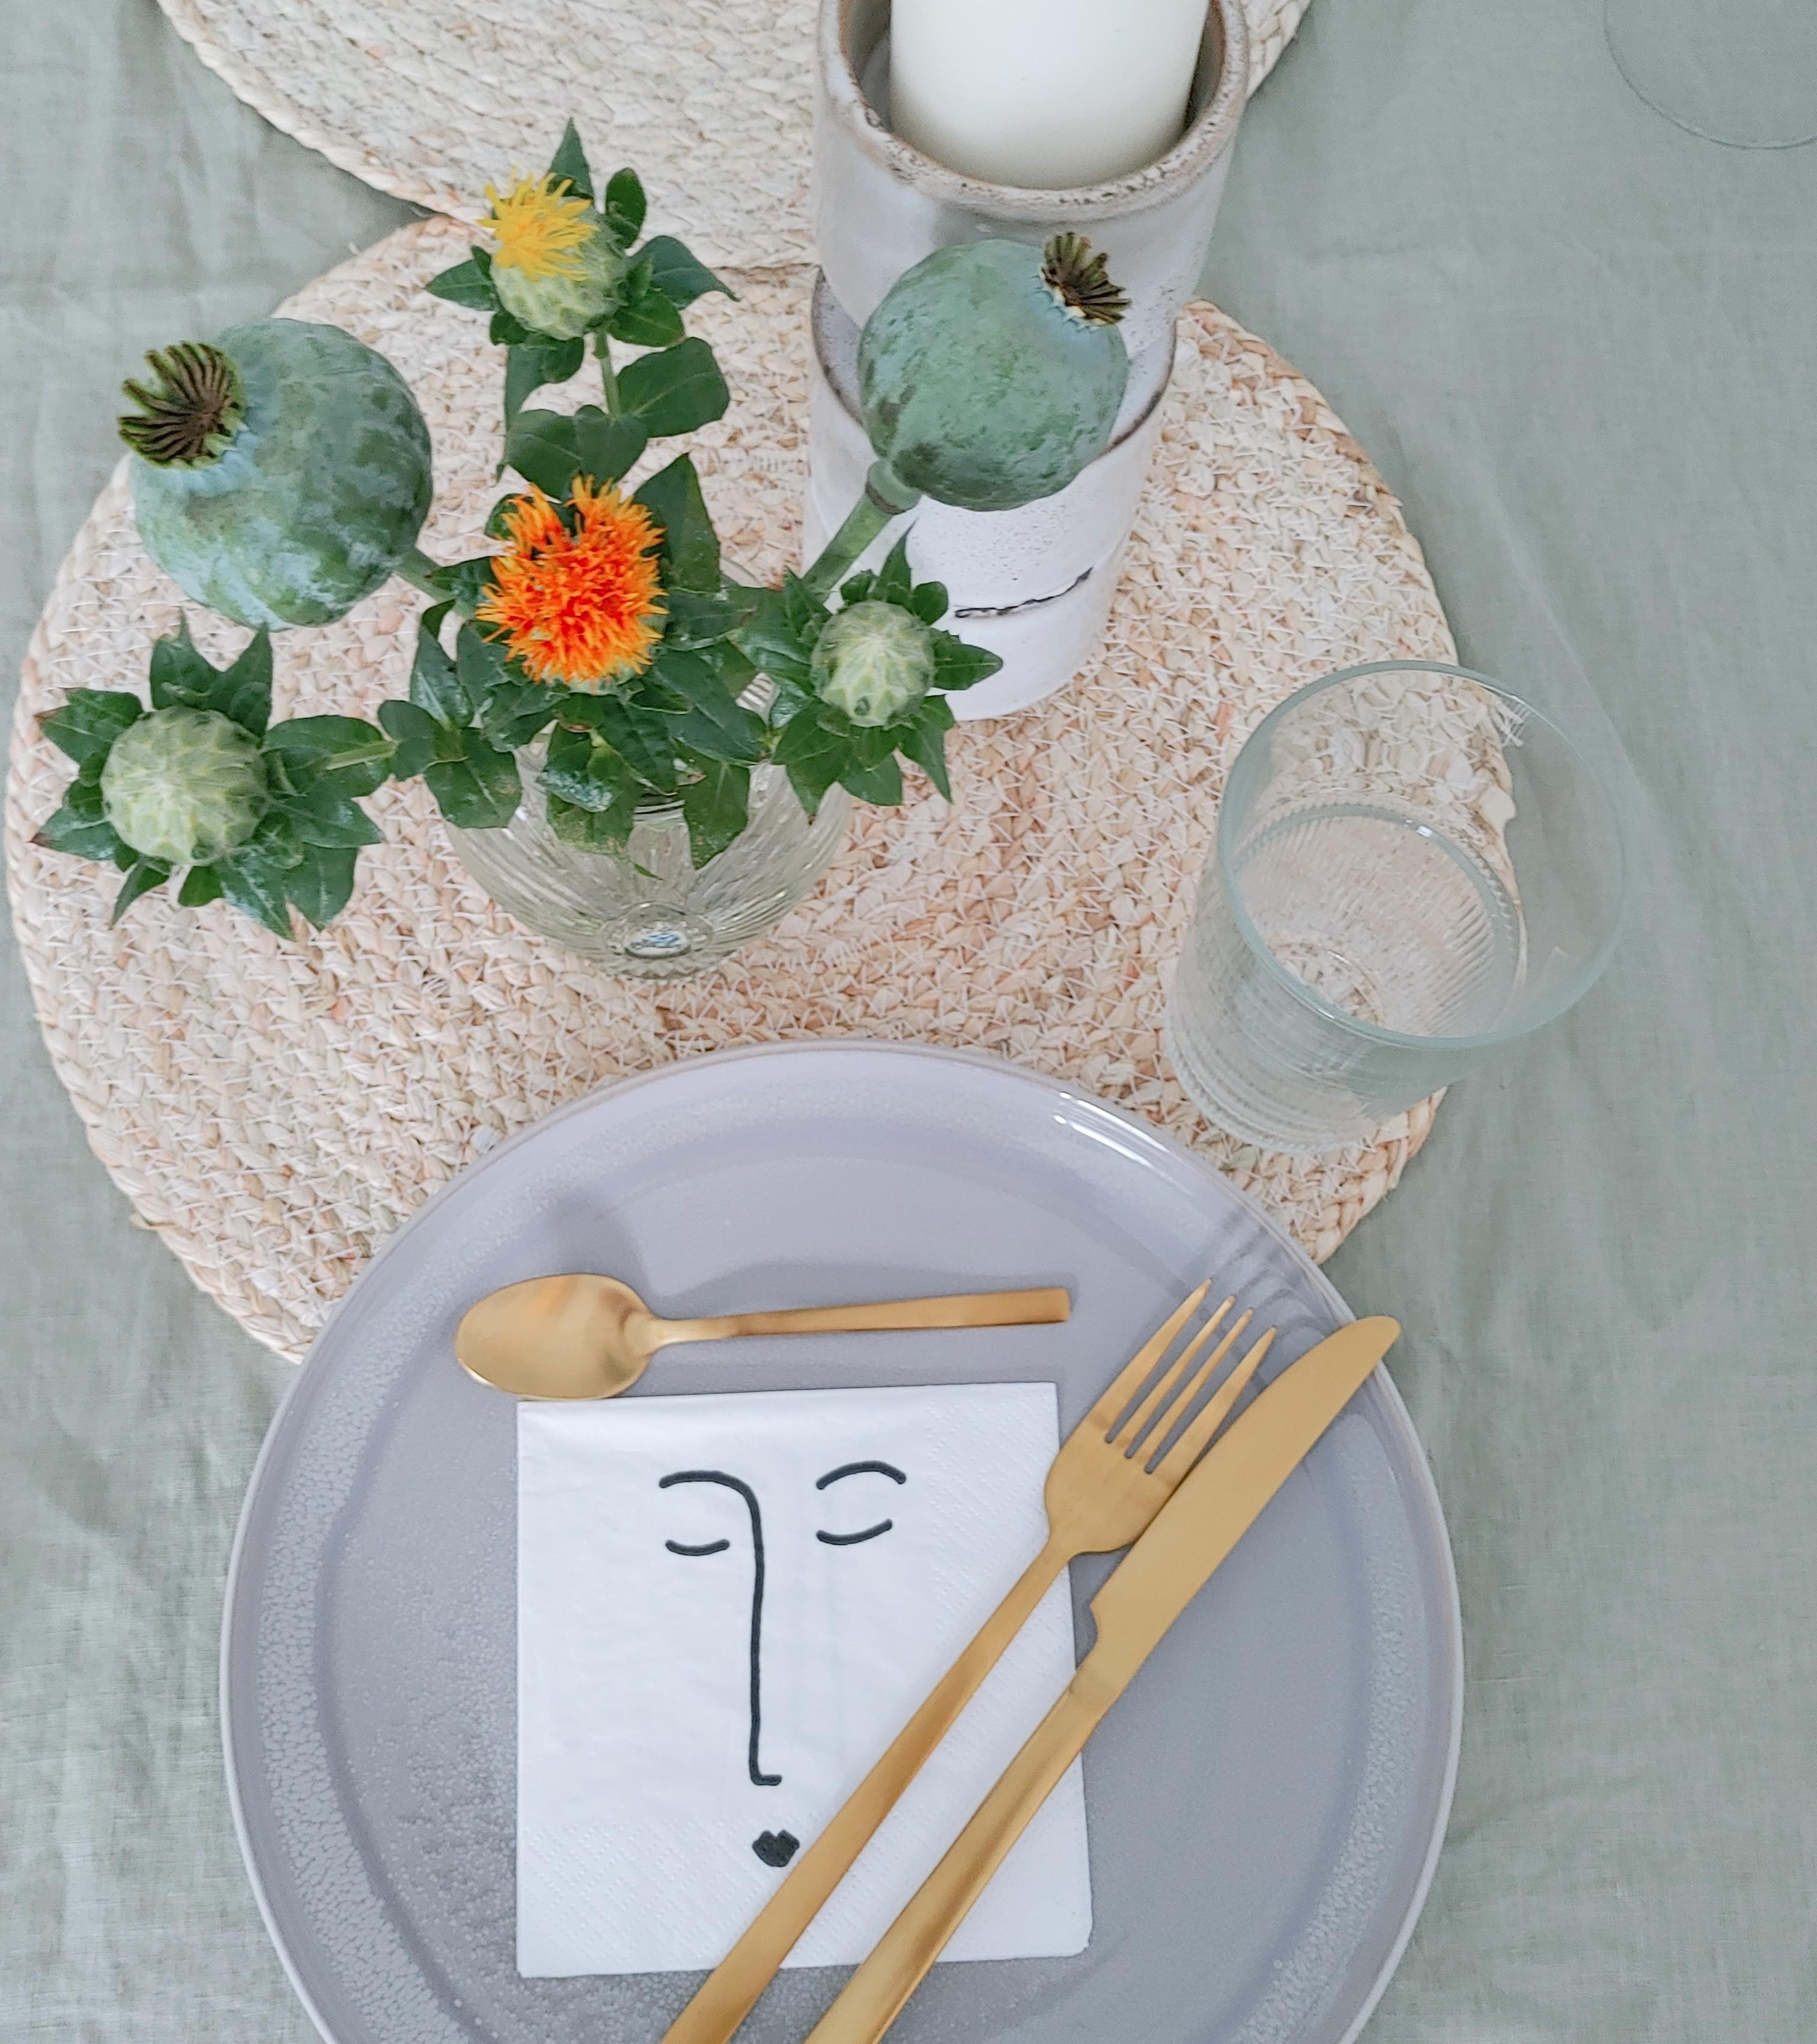 Gedeckter Tisch #tischdeko #frühstück #gästeerwartet #schnittblumen #couchliebt #geschirr